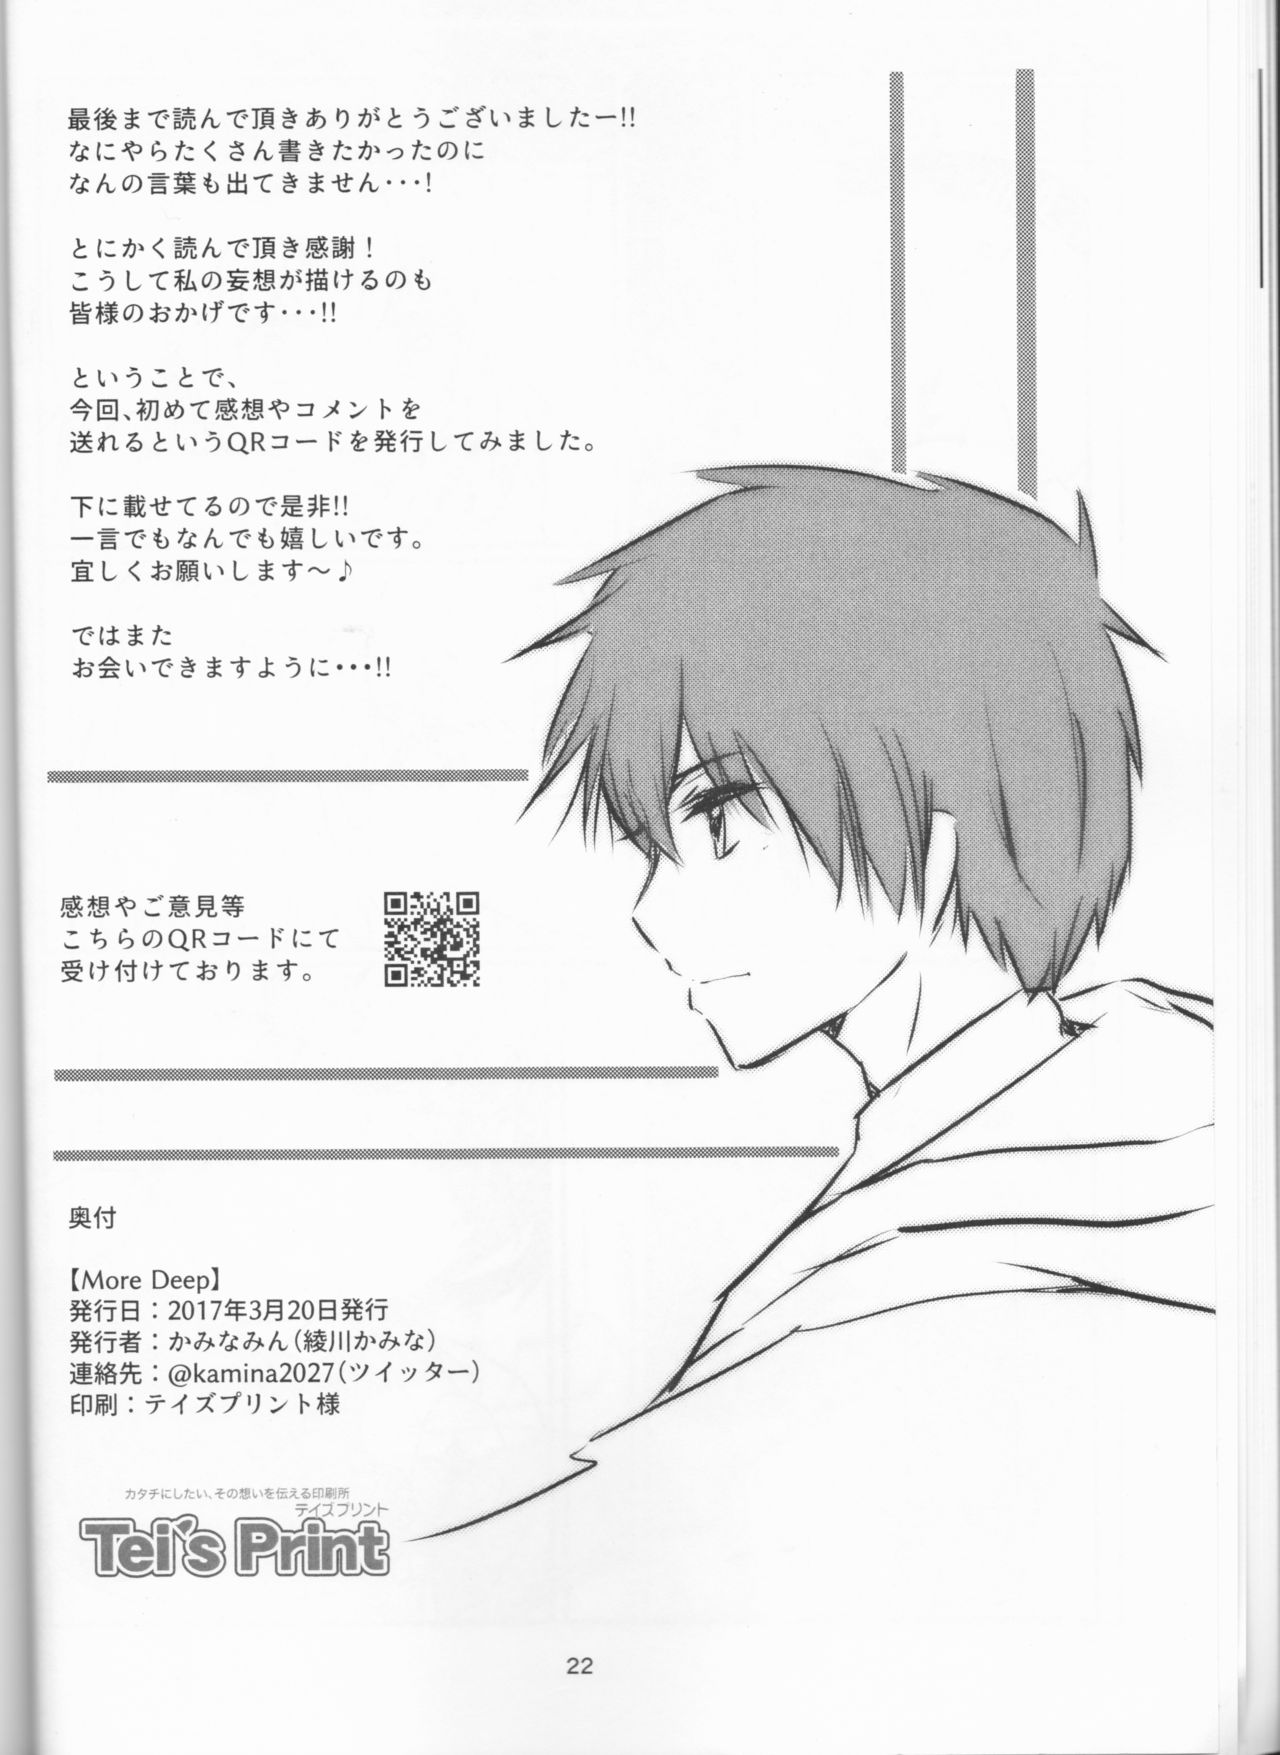 (HaruCC22) [Kaminamin (Ayagawa Kamina)] More Deep (Fate/Grand Order) page 22 full